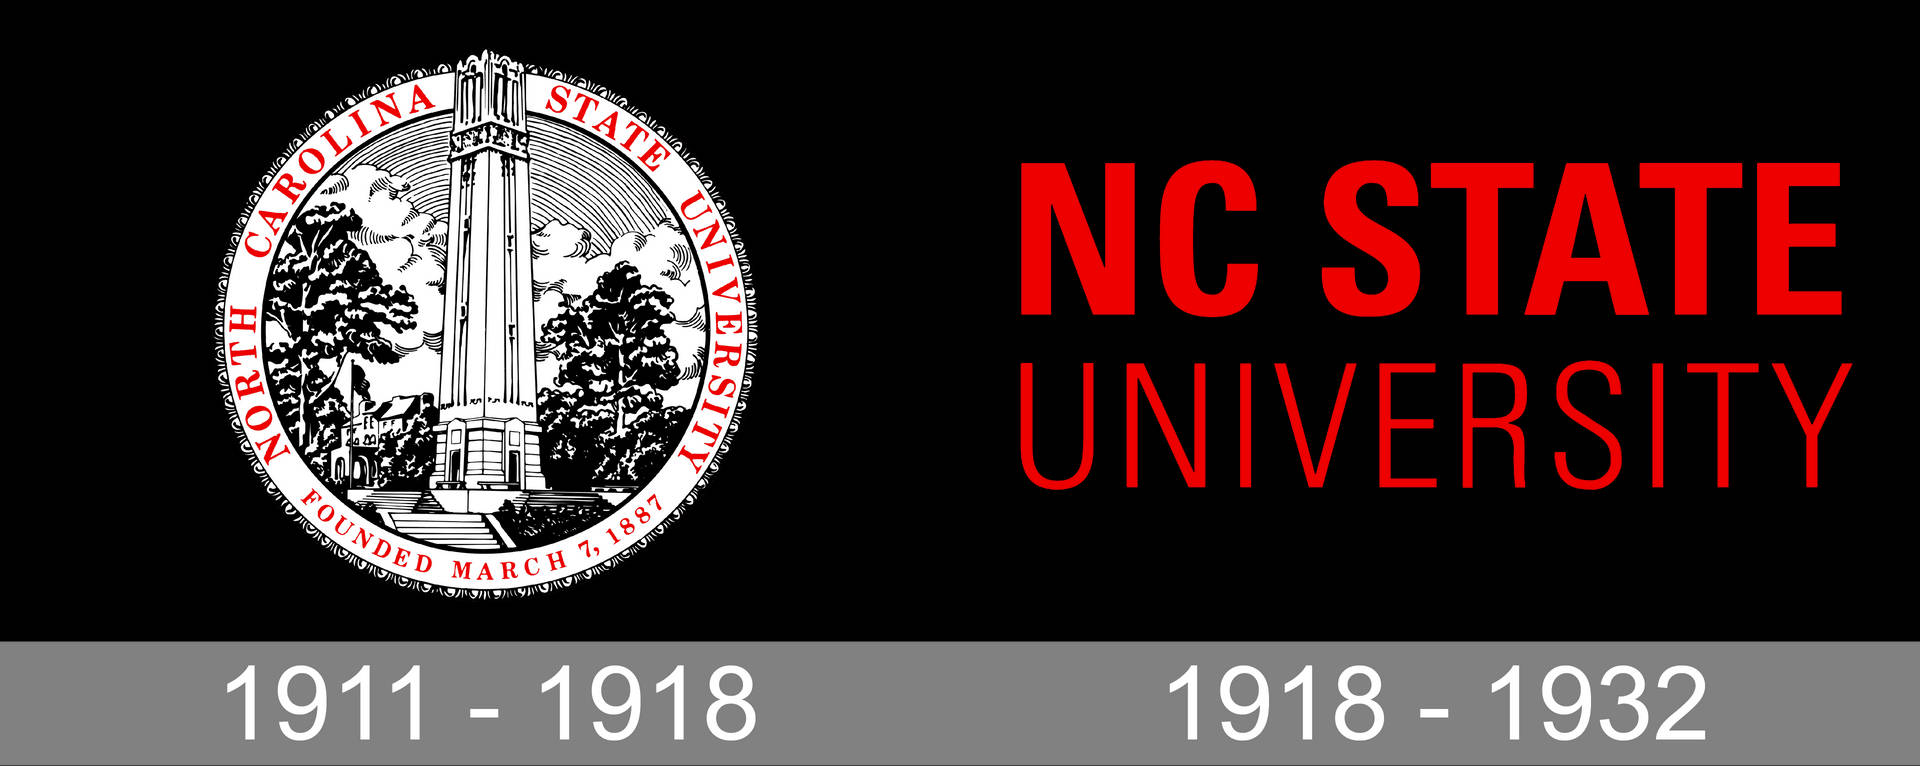 Seloda Universidade Estadual Da Carolina Do Norte. Papel de Parede